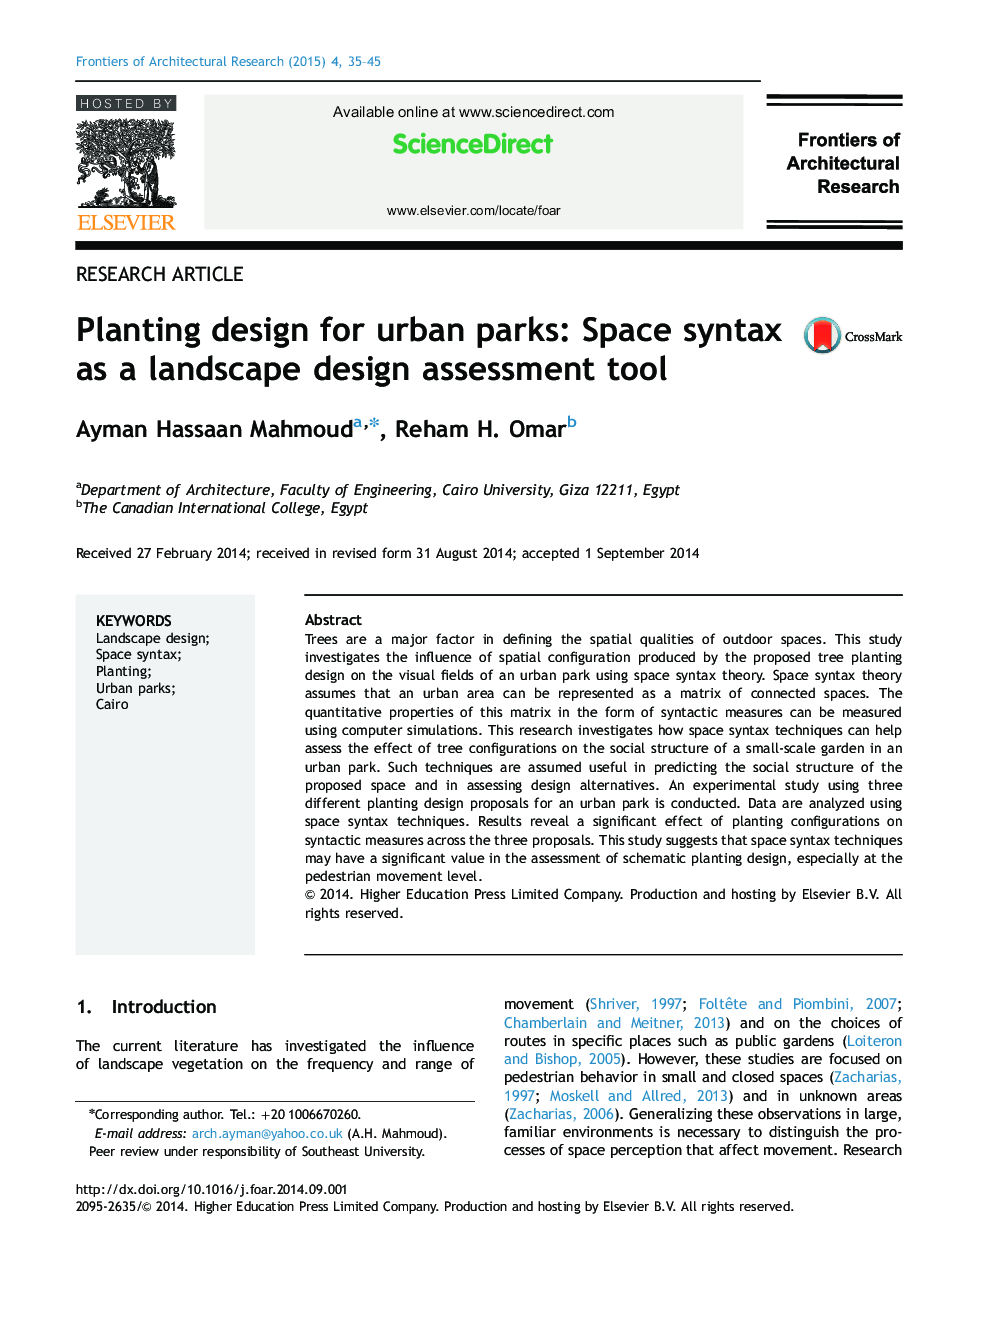 طراحی کاشت برای پارک های شهری: نحو فضا به عنوان ابزار ارزیابی طراحی چشم انداز 